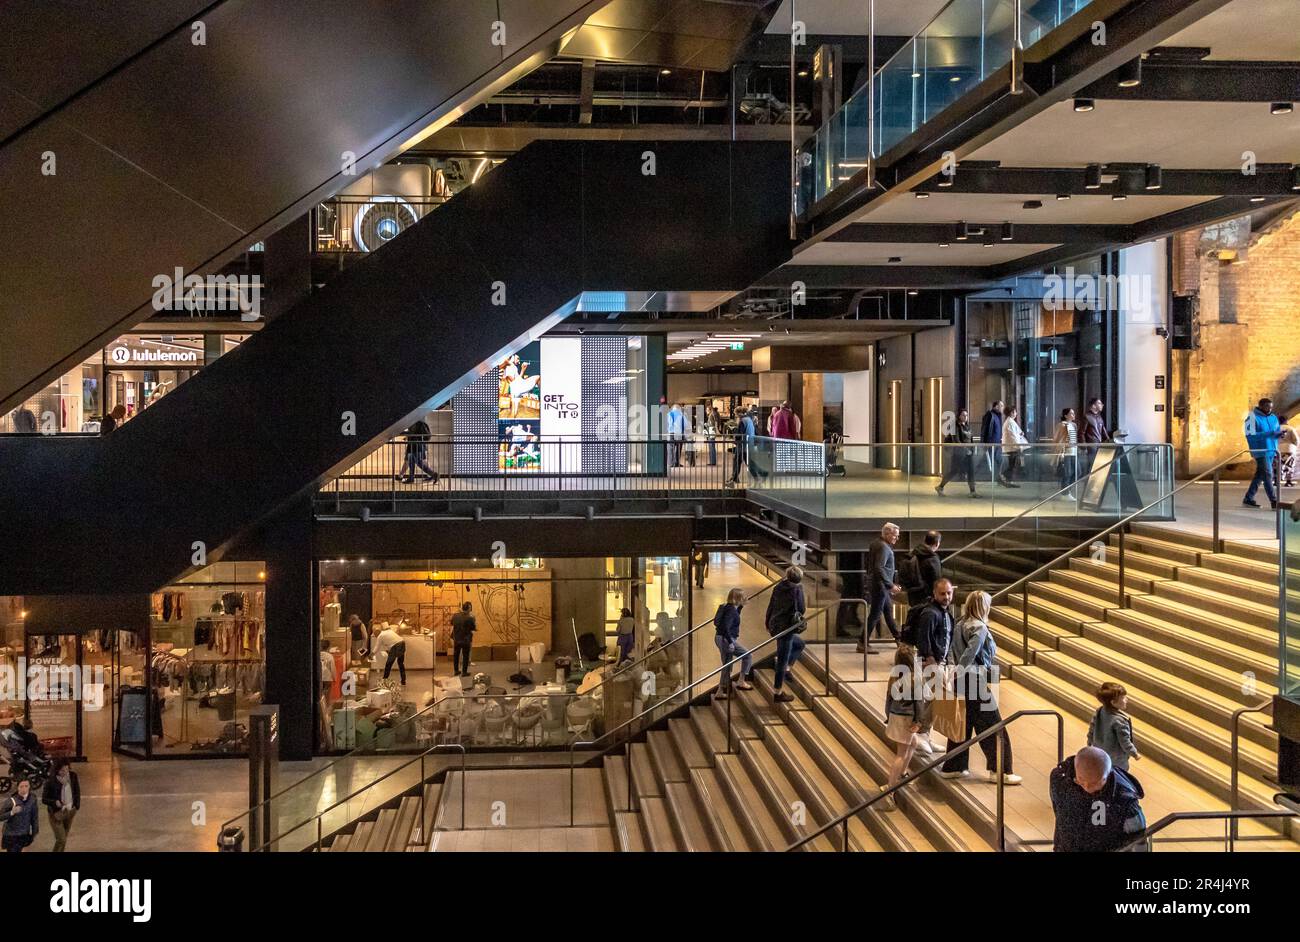 Persone sulle scale e scale mobili presso l'atrio dell'ingresso sud della centrale elettrica di Battersea, oggi una delle principali destinazioni per lo shopping e il tempo libero, Londra, SW11 Foto Stock